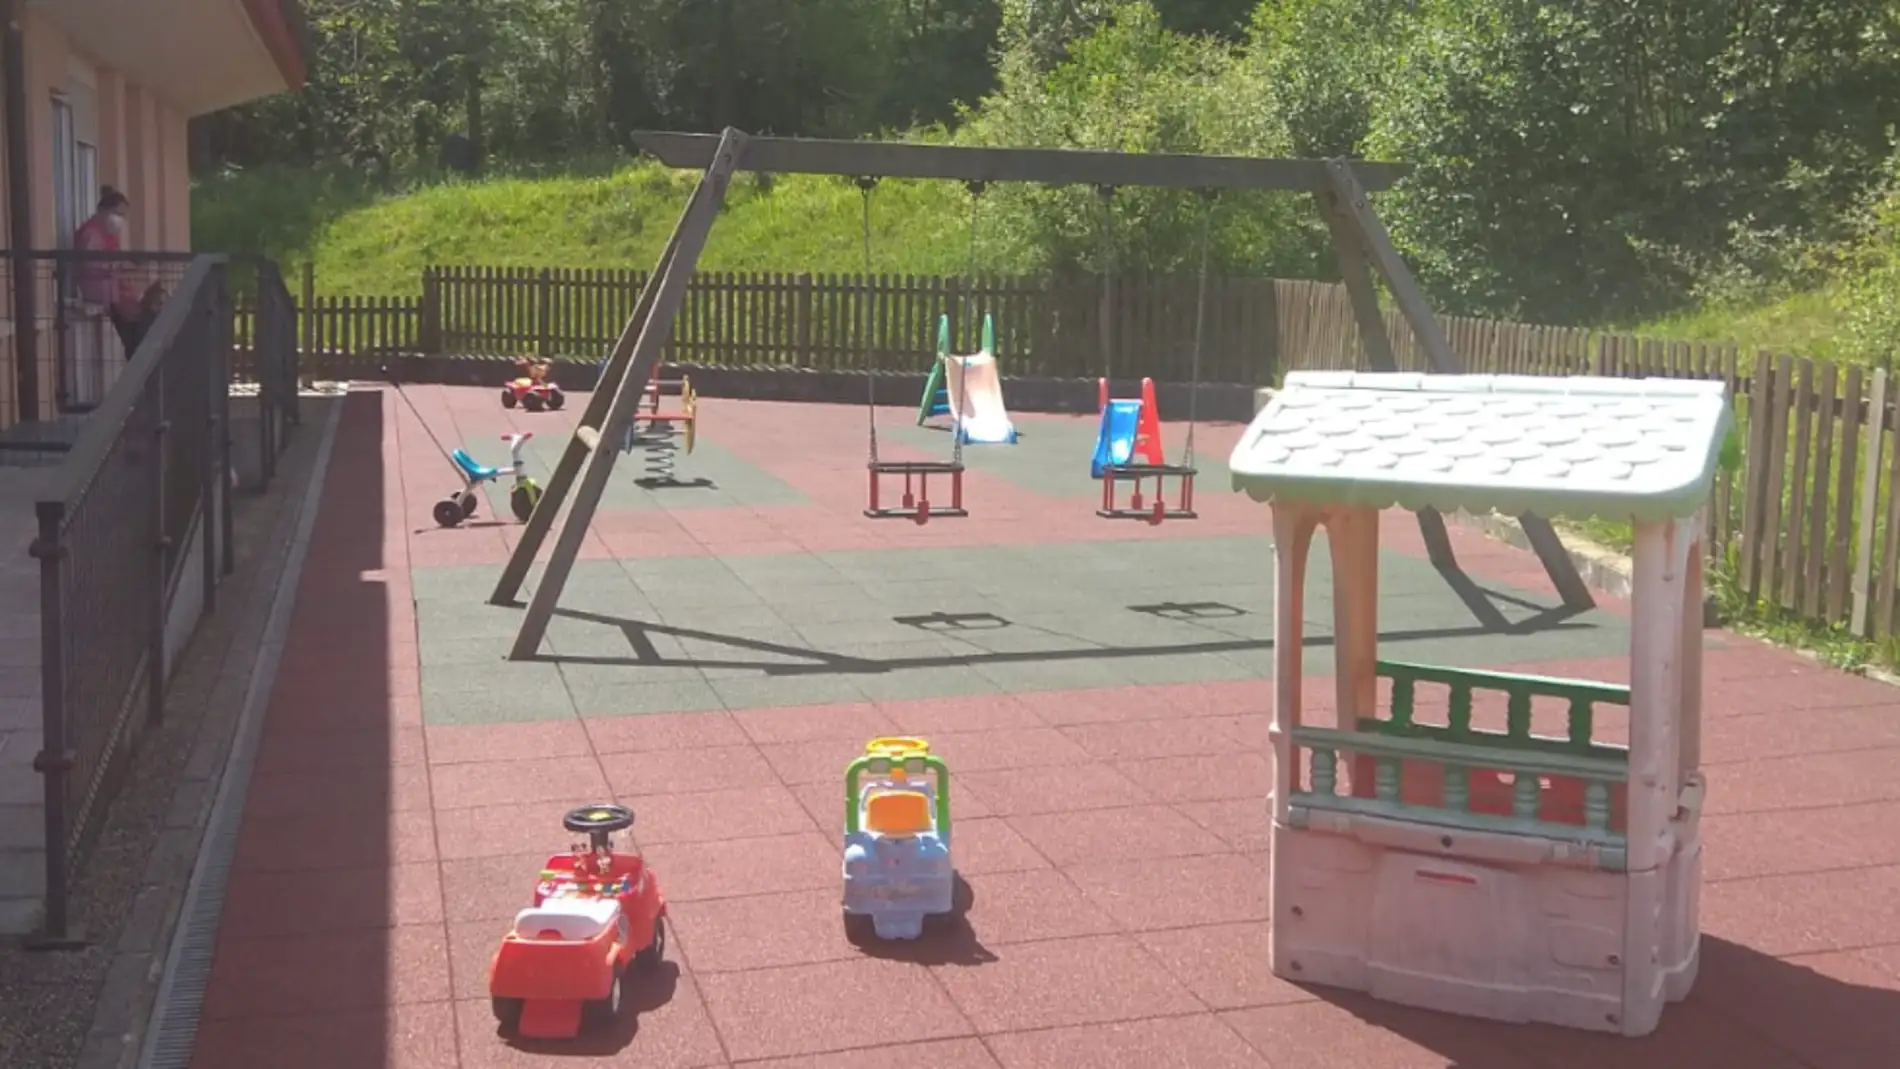 Bimenes habilita un parque de juegos en la escuela infantil